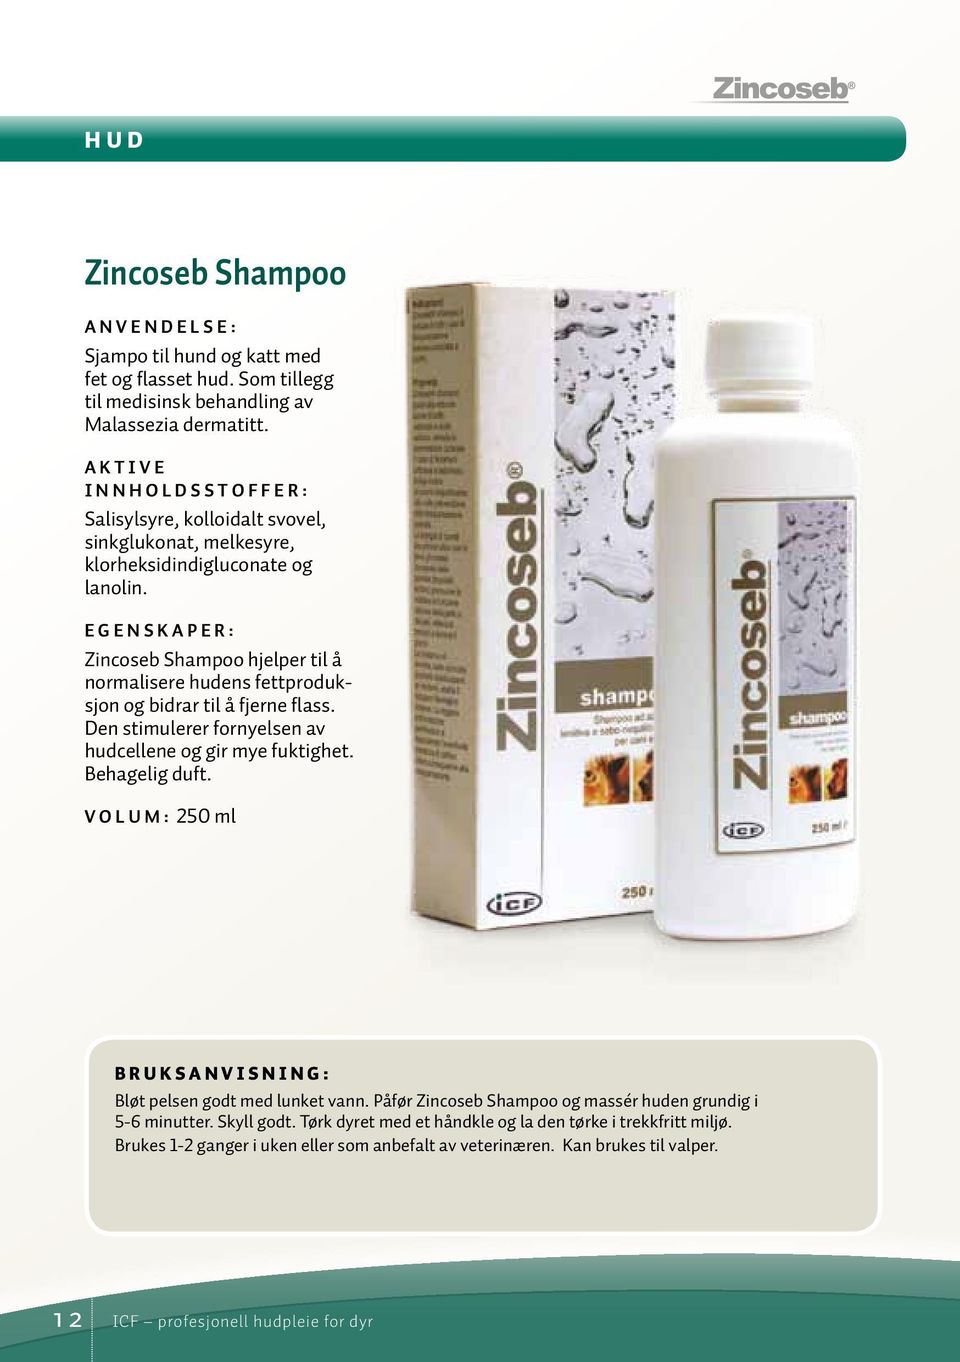 EGENSKAPER: Zincoseb Shampoo hjelper til å normalisere hudens fettproduksjon og bidrar til å fjerne flass. Den stimulerer fornyelsen av hudcellene og gir mye fuktighet. Behagelig duft.